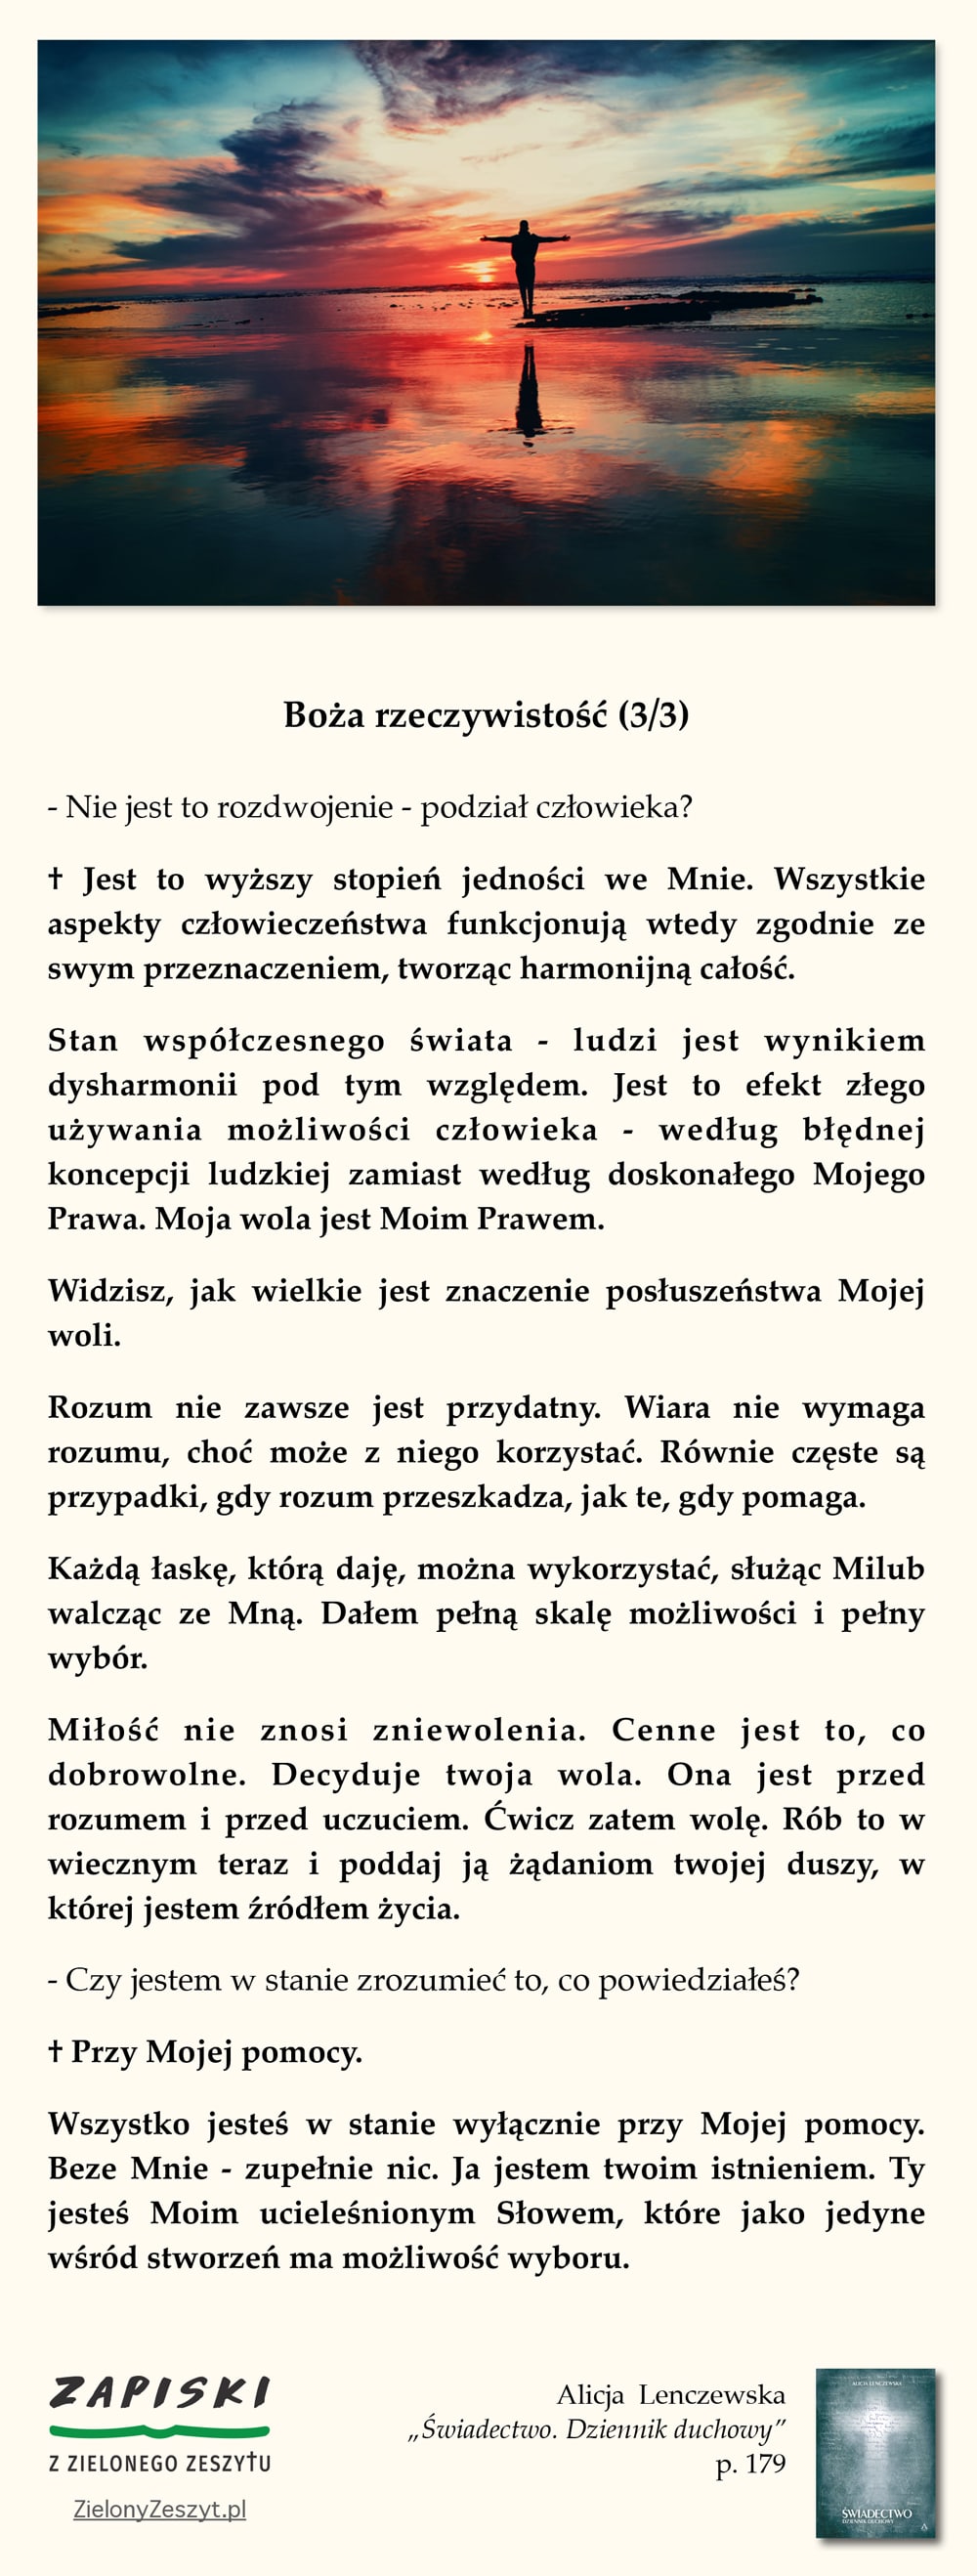 Alicja Lenczewska, "Świadectwo. Dziennik duchowy", p. 179 (Boża rzeczywistość (3/3))